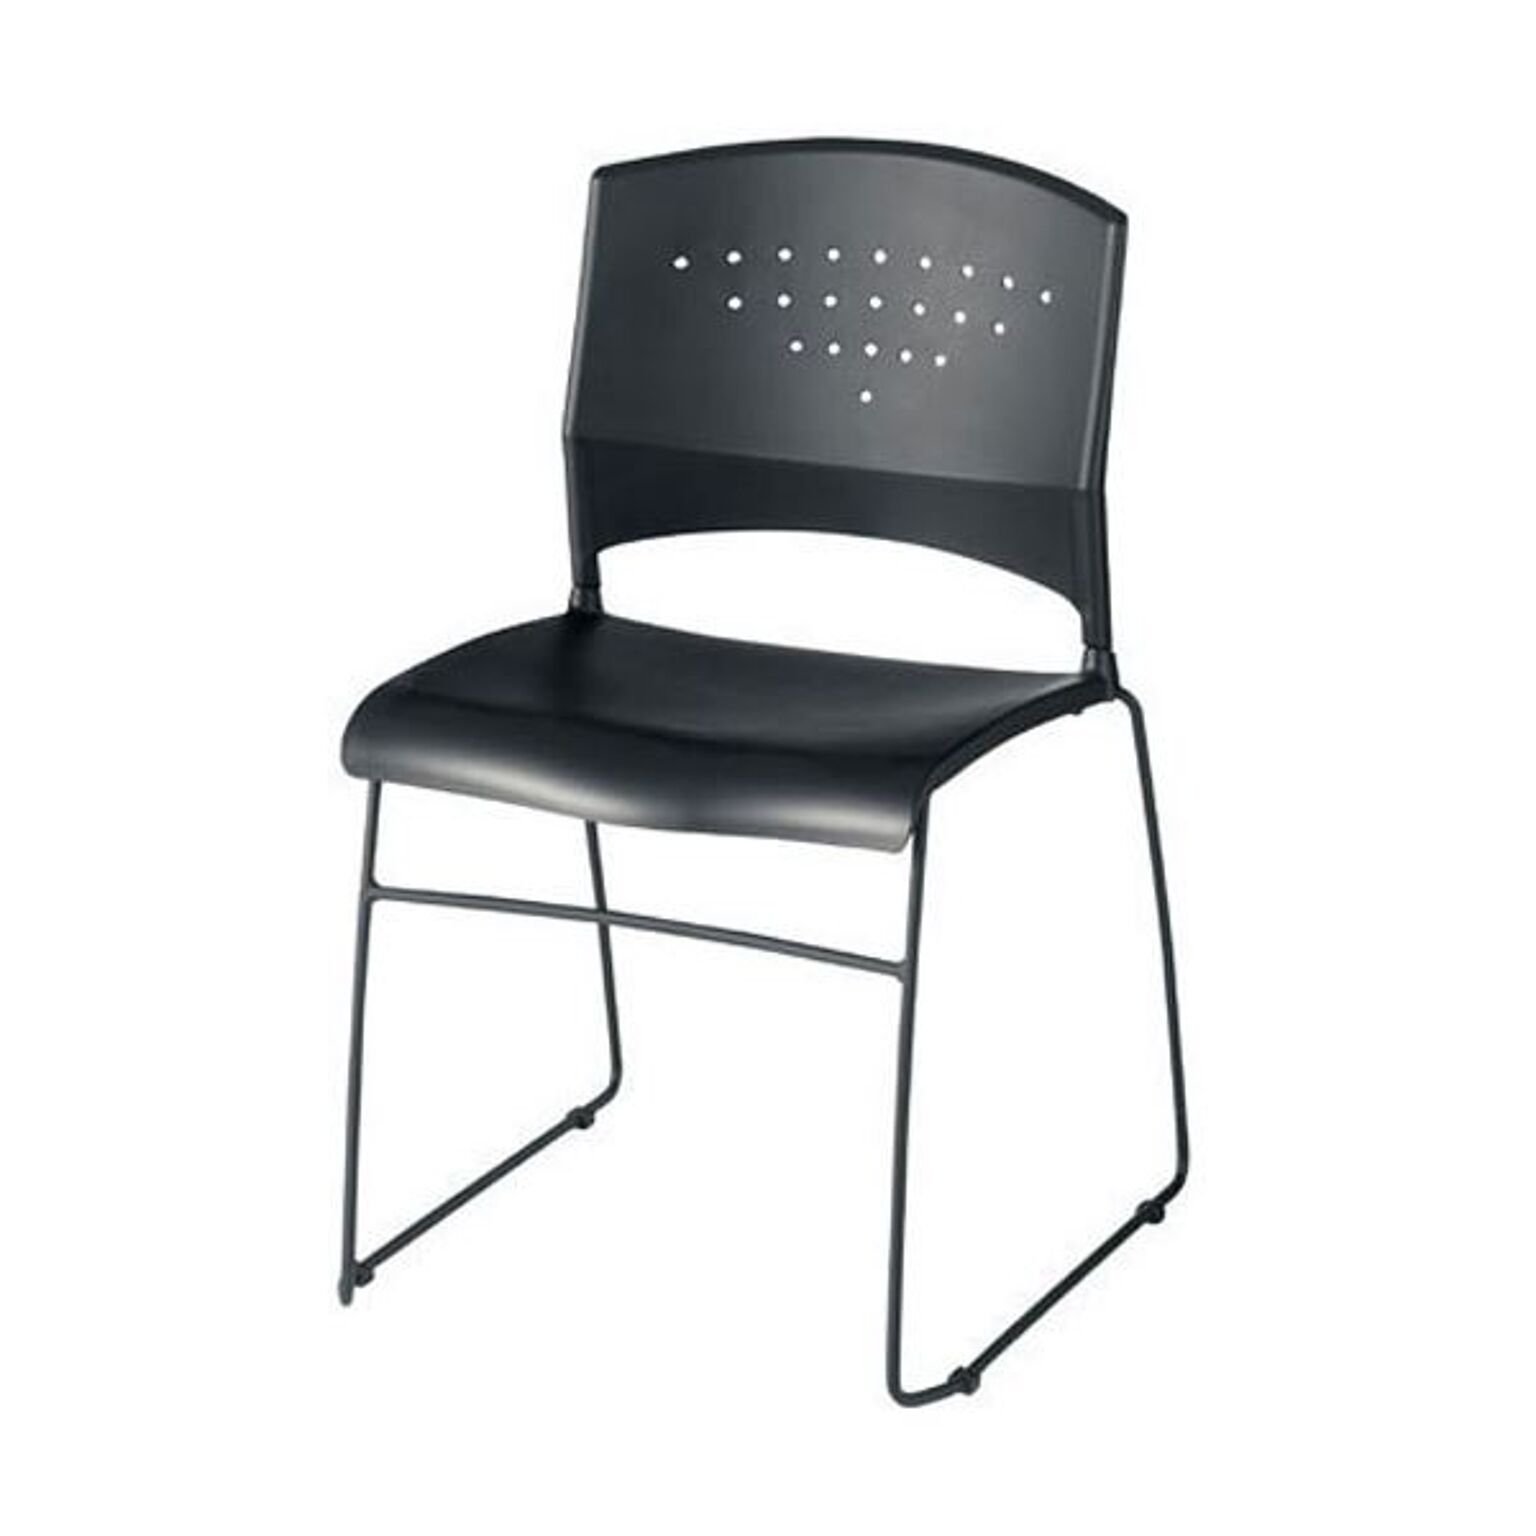 ジョインテックス 会議椅子(スタッキングチェア/ミーティングチェア) 肘なし GK-N10 完成品